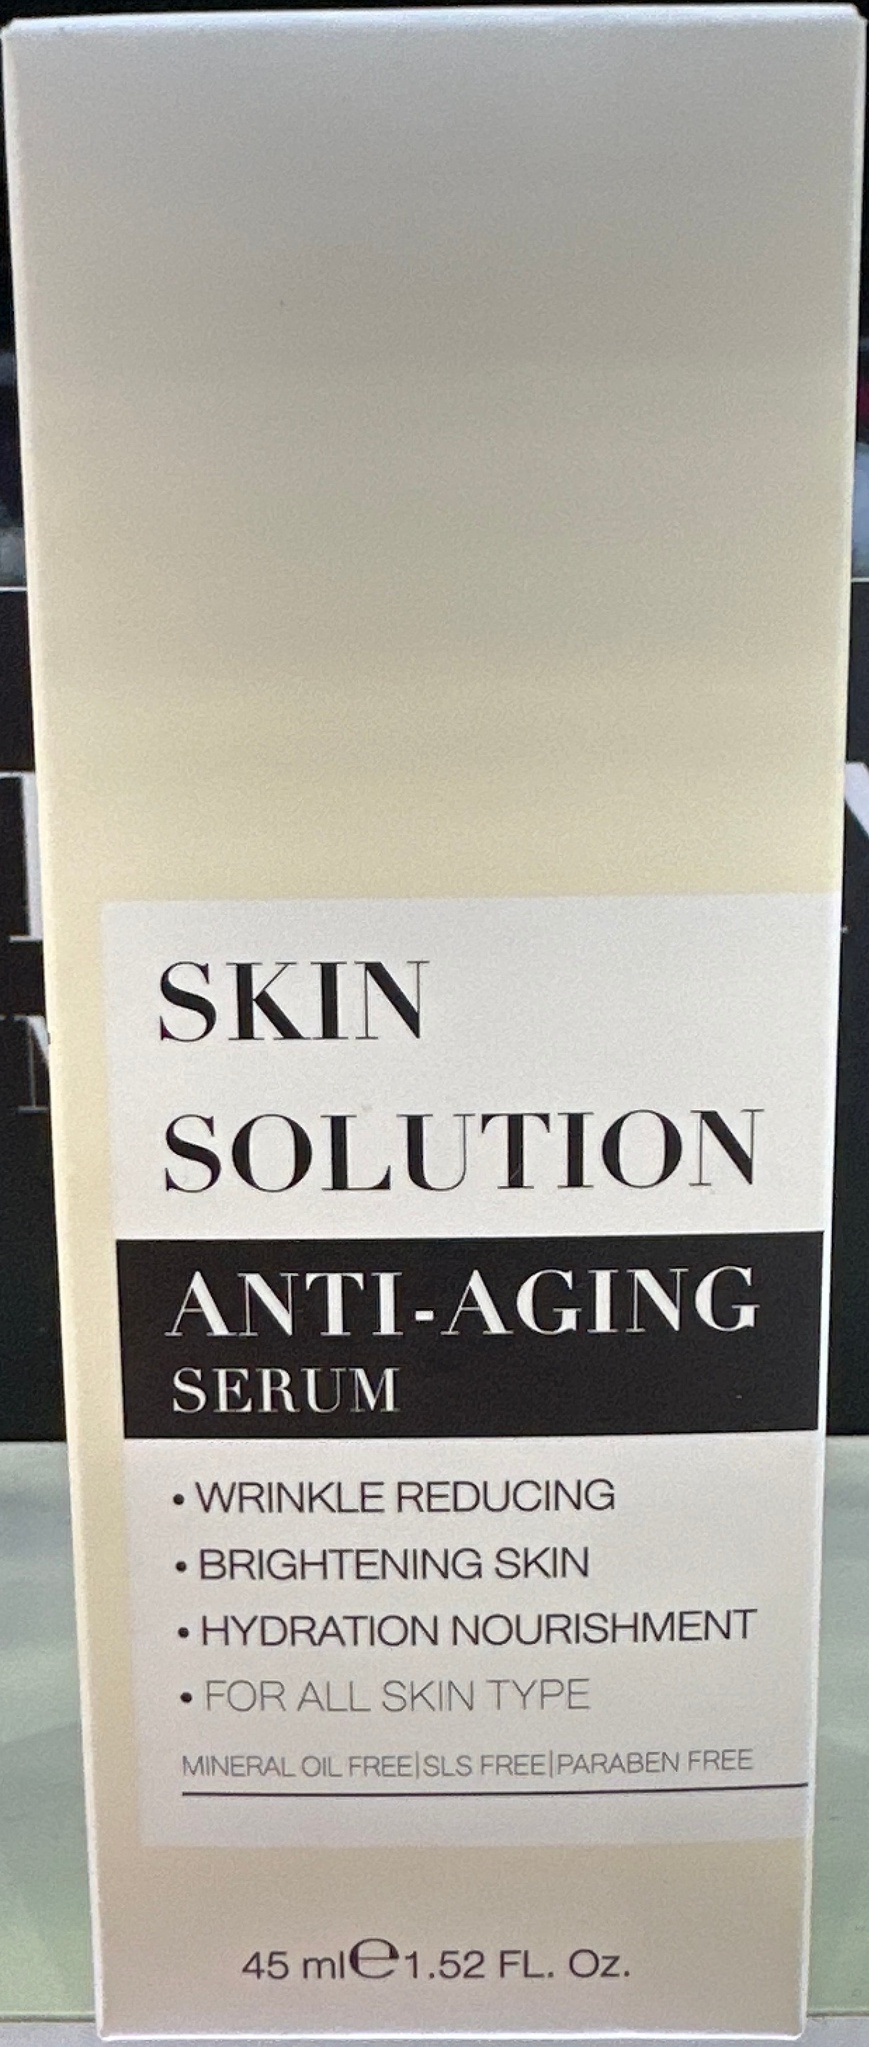 Skin solution Anti-aging Serum